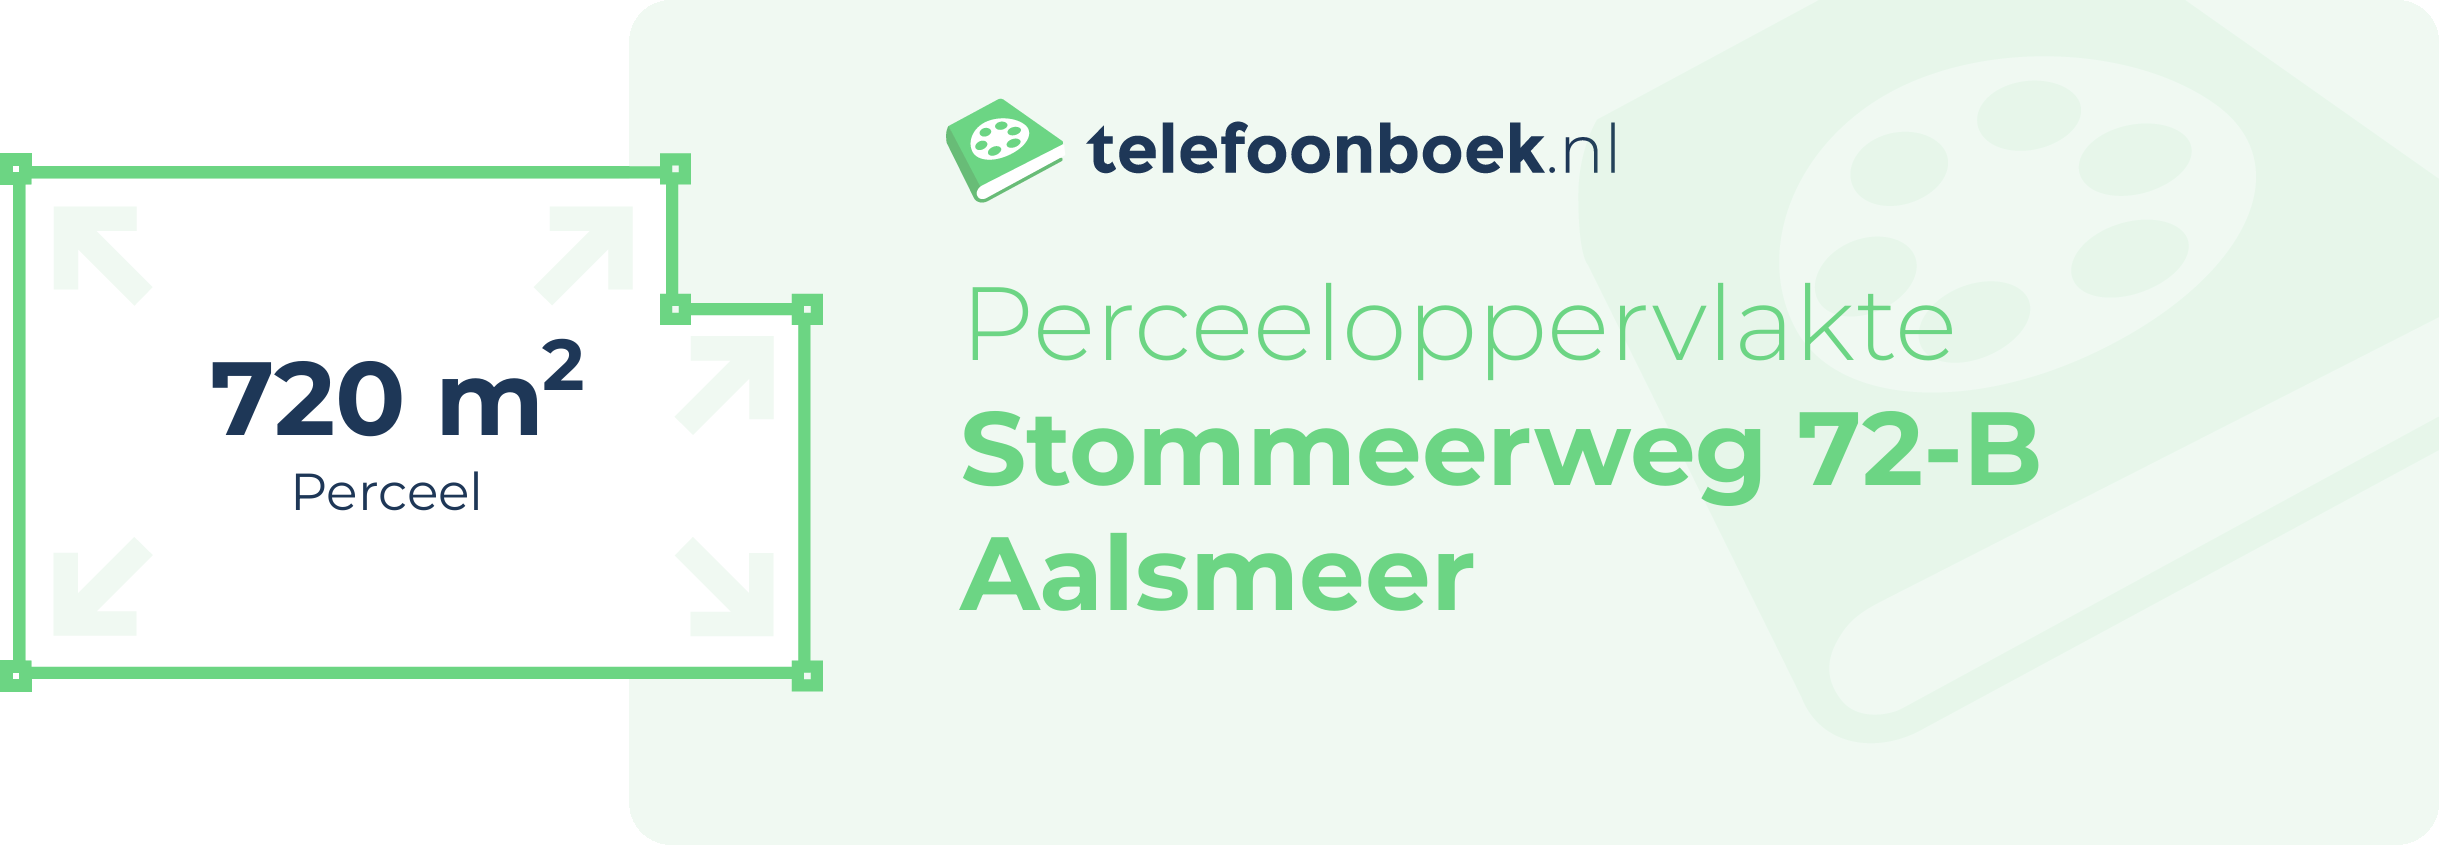 Perceeloppervlakte Stommeerweg 72-B Aalsmeer